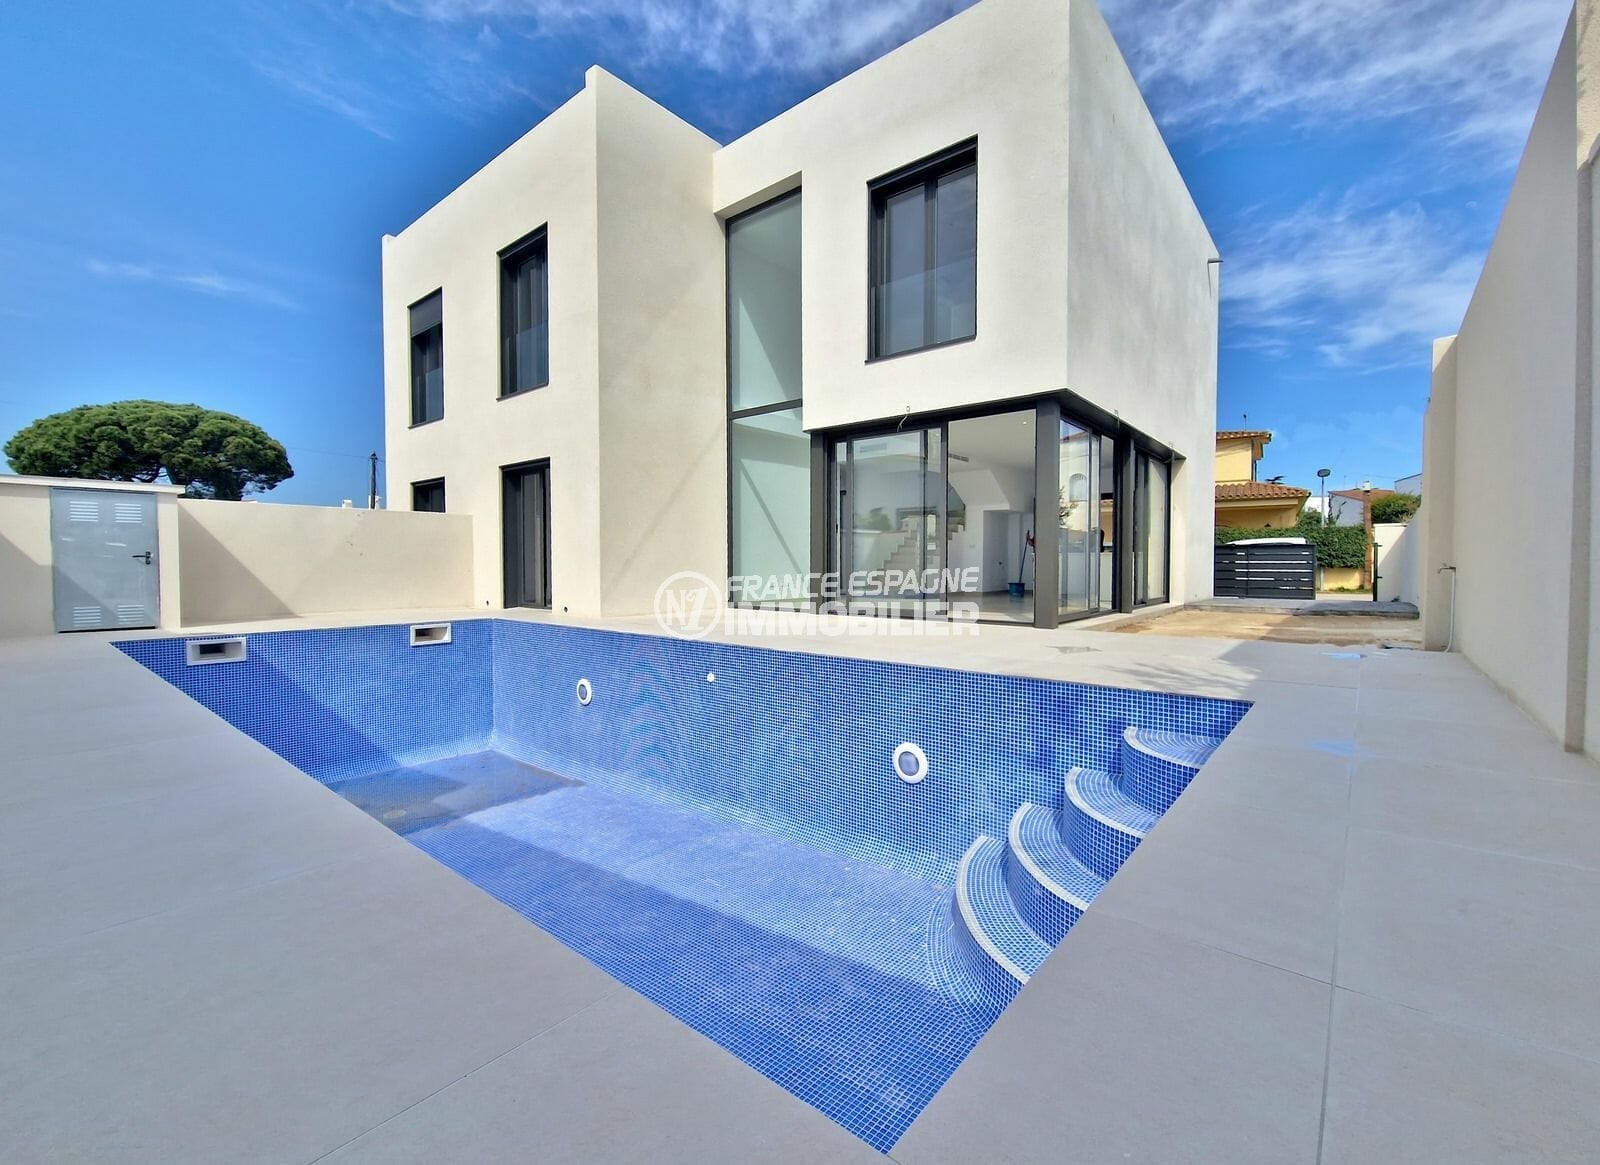 immobilier empuria brava: nueva villa moderna de 5 habitaciones 163 m2, playa 600m